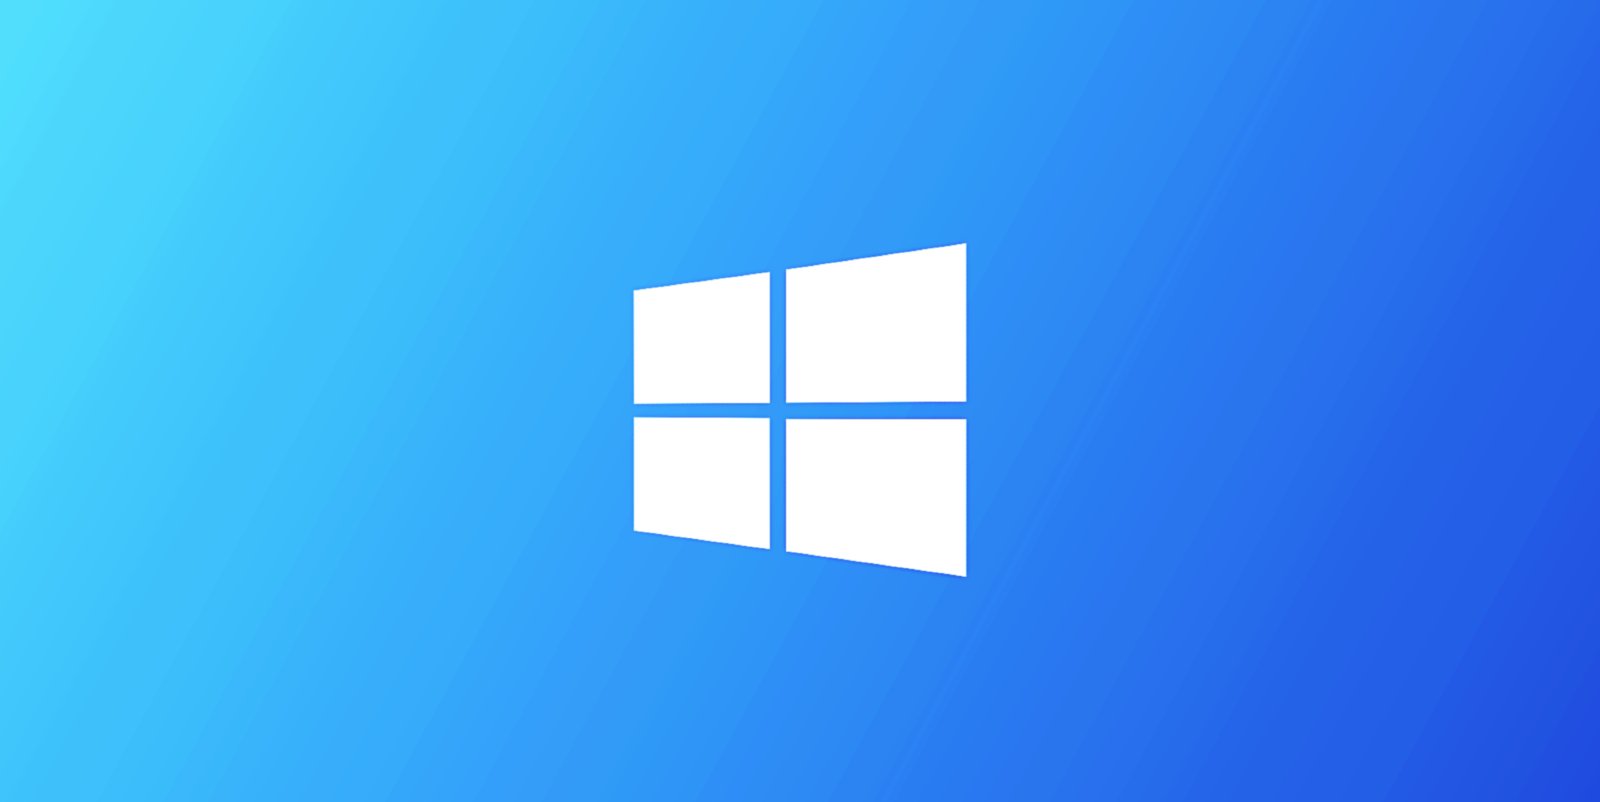 Windows 10 20H2 KB5001391 Cumulative Update Preview Released